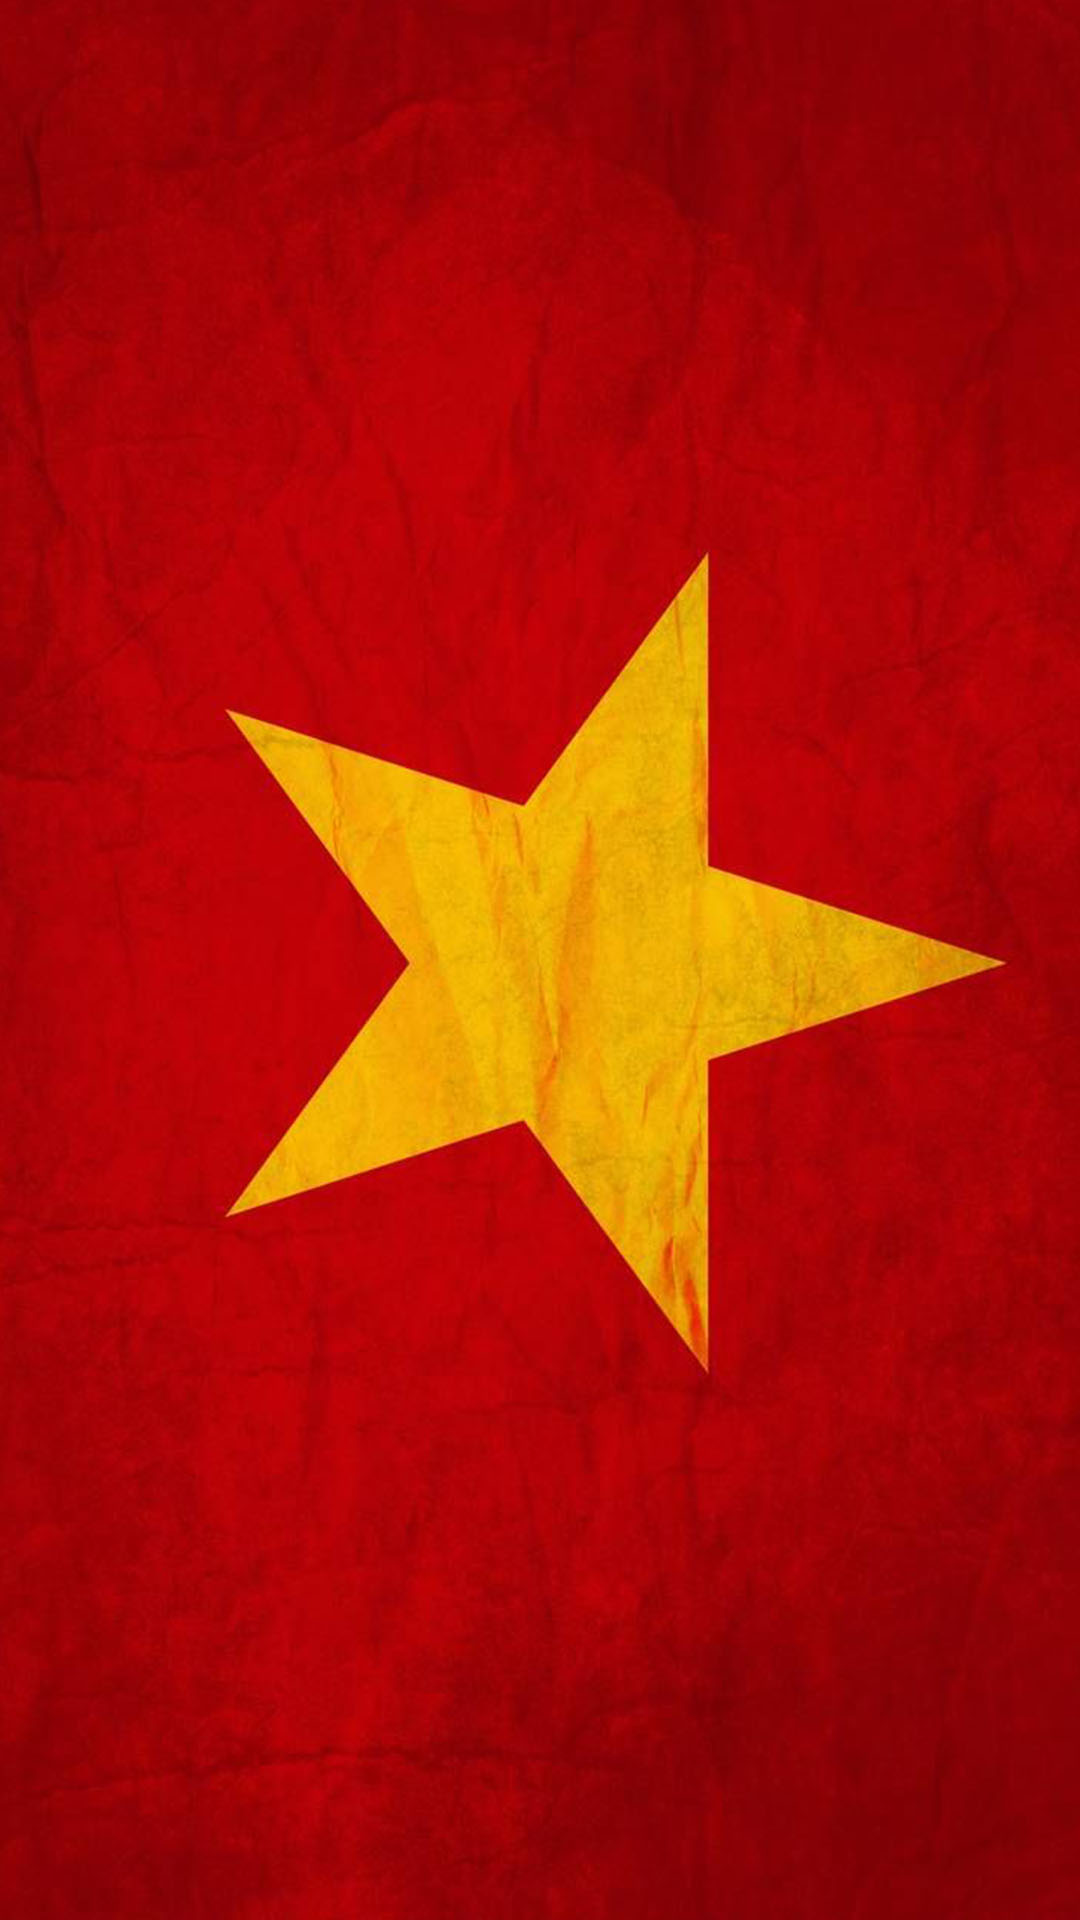 Để mang đến cho bạn trải nghiệm tuyệt vời nhất khi nhìn vào màn hình, hãy chọn ngay những bức hình nền cờ Việt Nam tái hiện hoàn hảo với chất lượng full HD, 4K. Điểm nhấn độc đáo để tôn vinh niềm đam mê yêu nước của bạn!